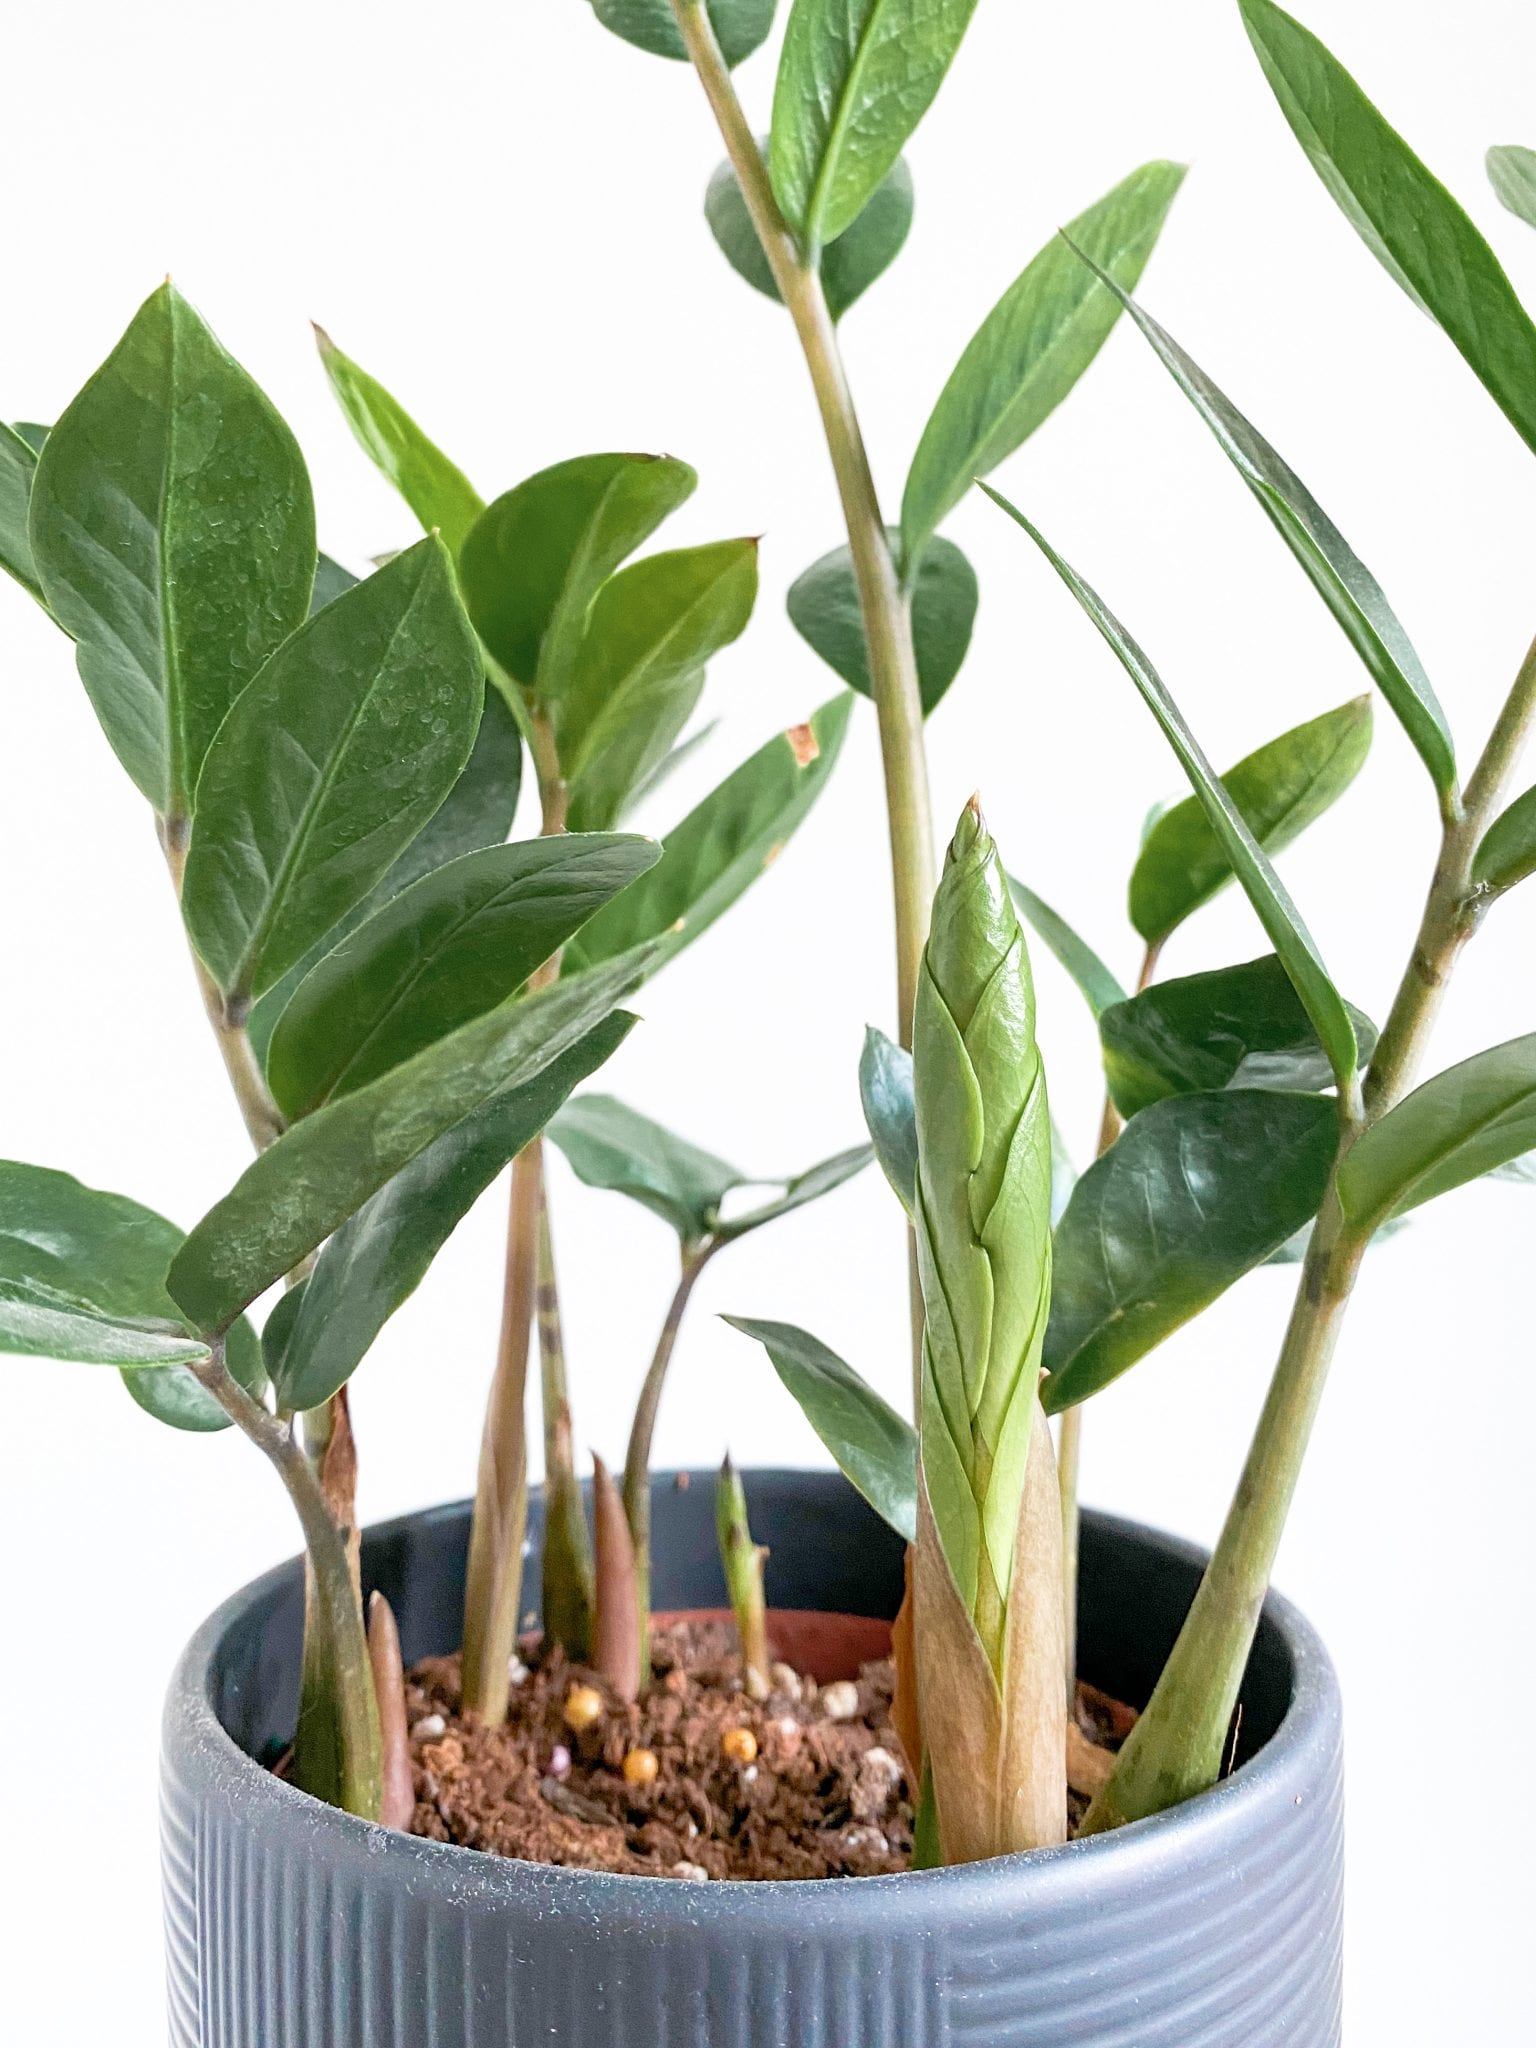 zz plant growing indoor beginner